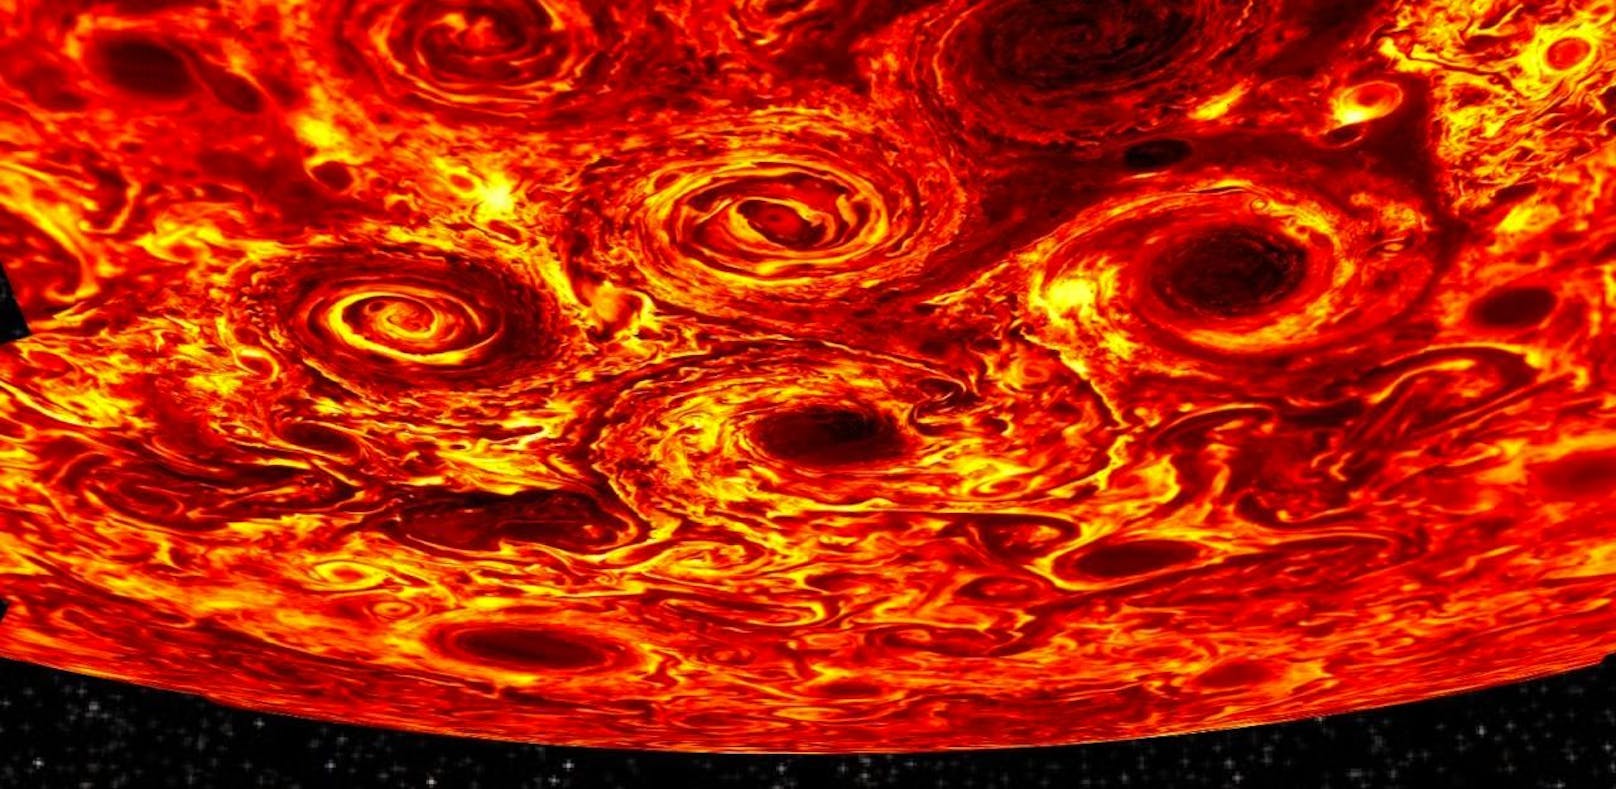 Auf dem Jupiter toben riesige Sturm-Karusselle